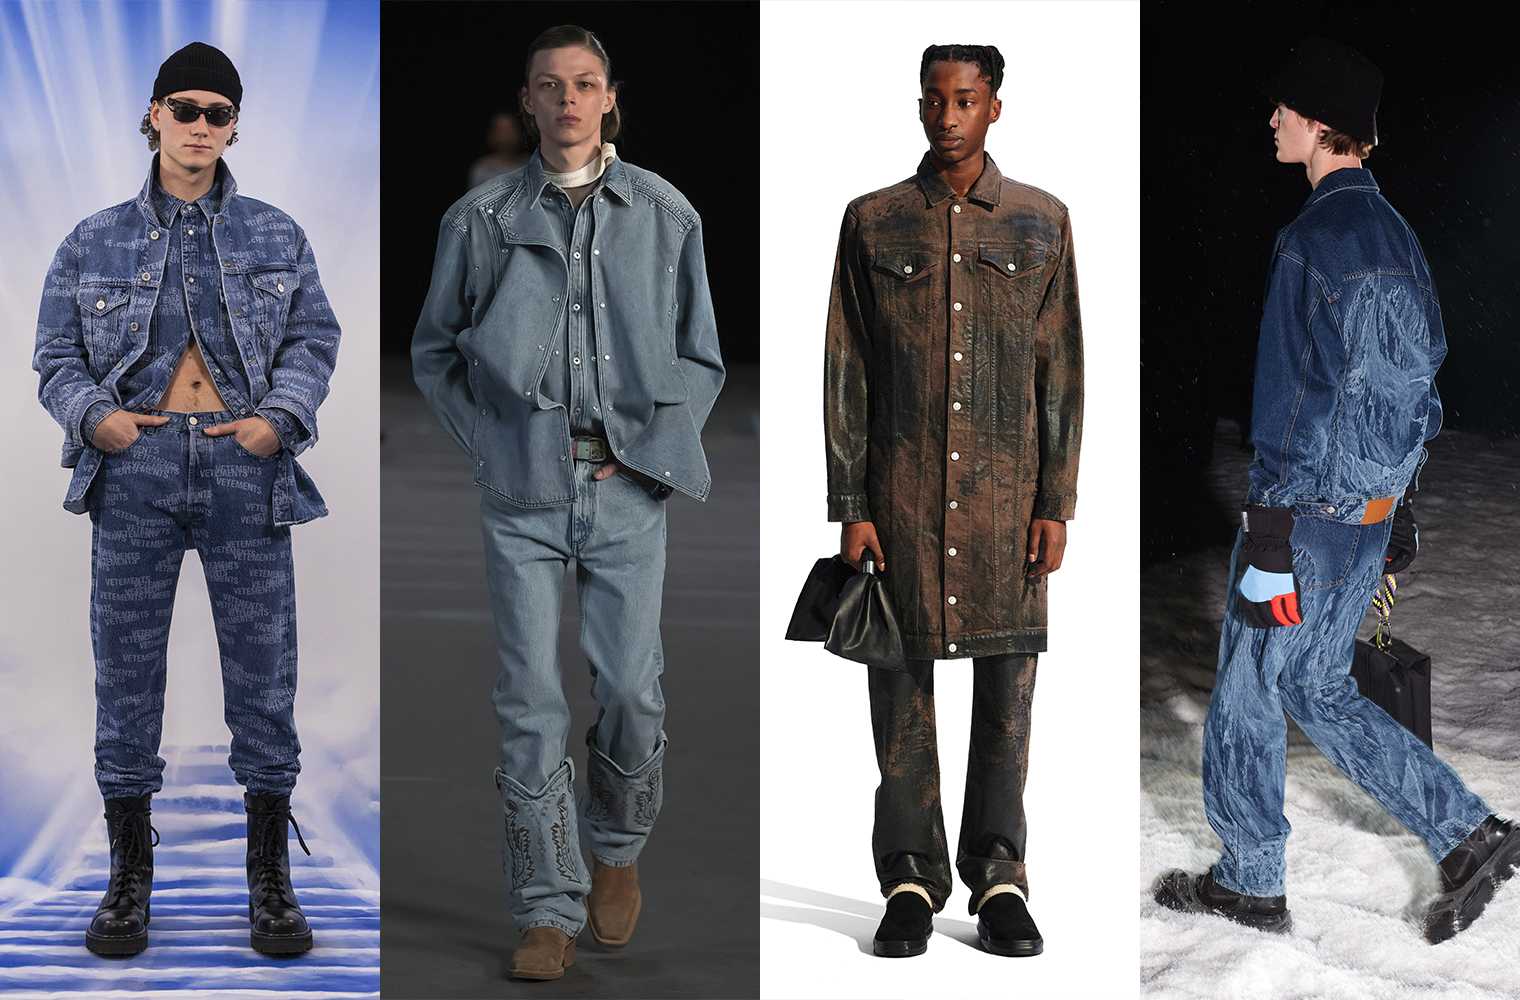 Разновидности молодежной мужской одежды в зависимости от стиля